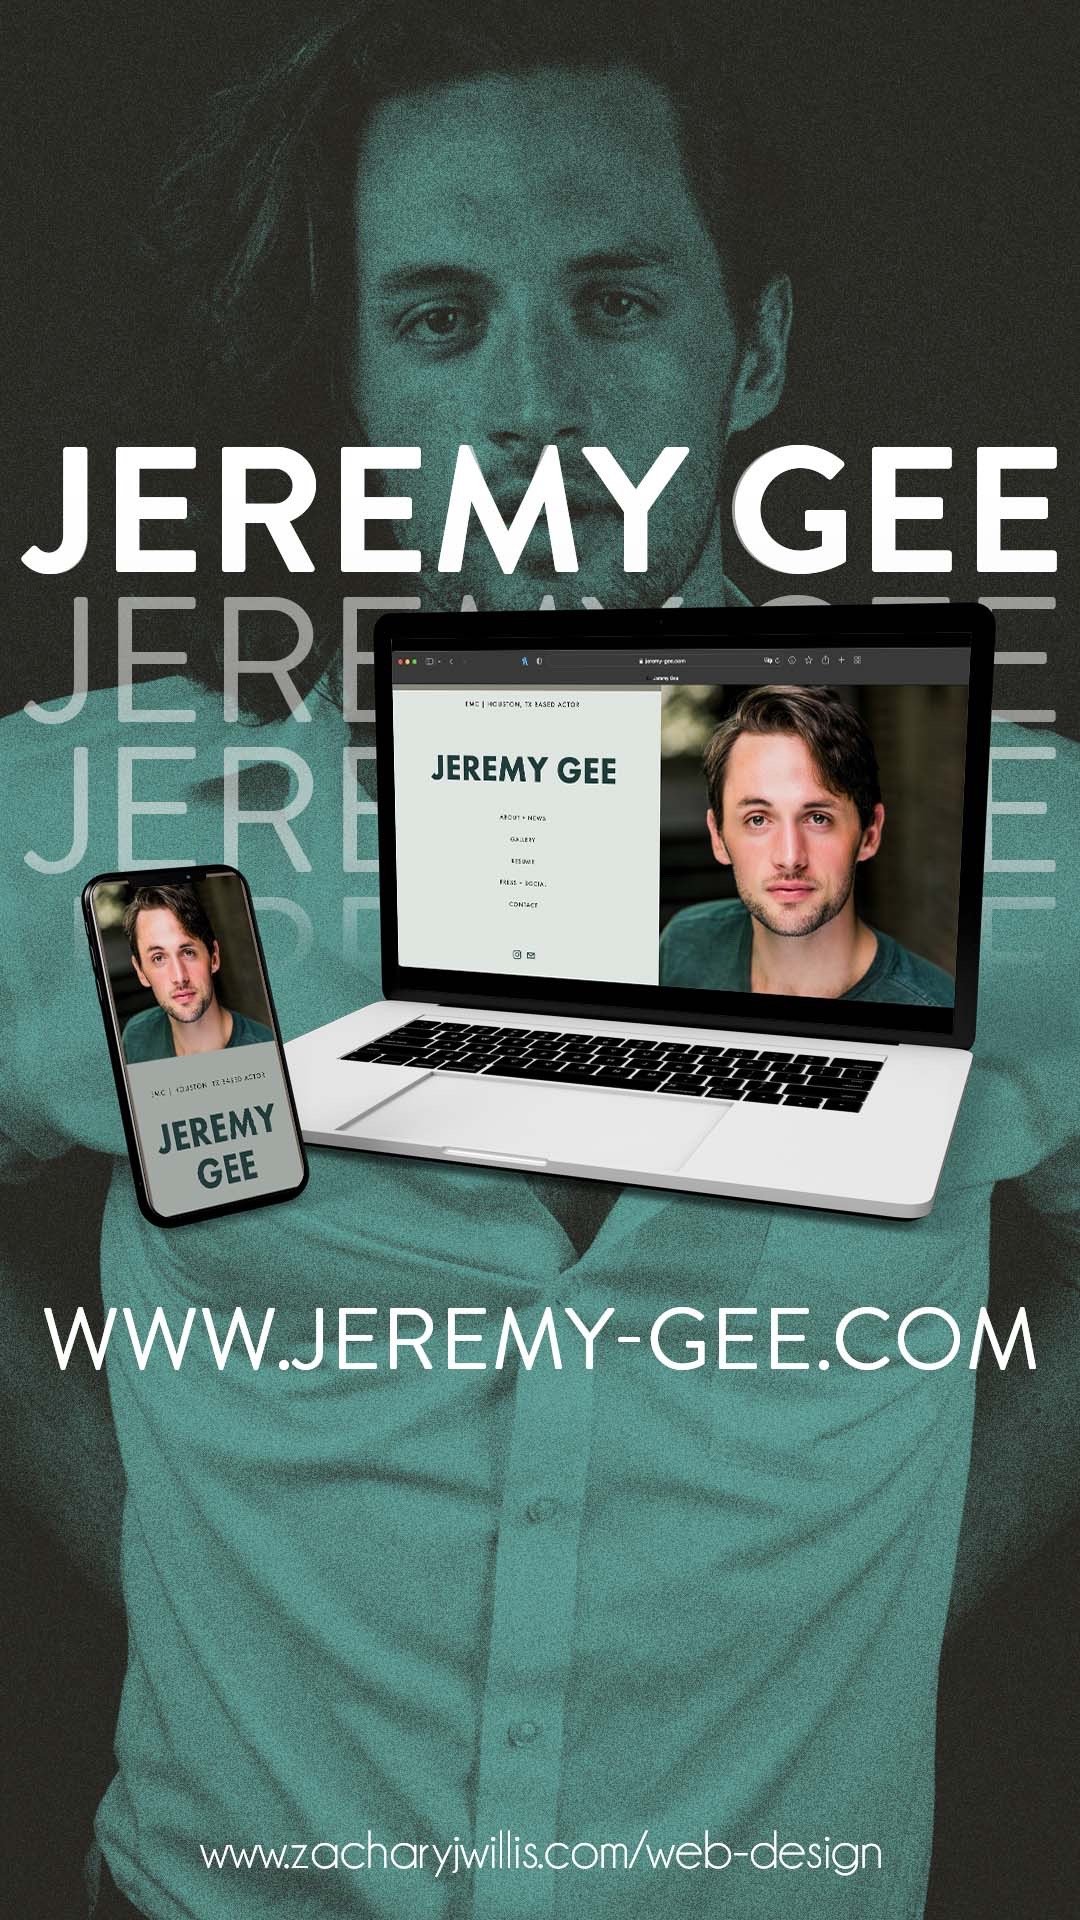 Jeremy Gee